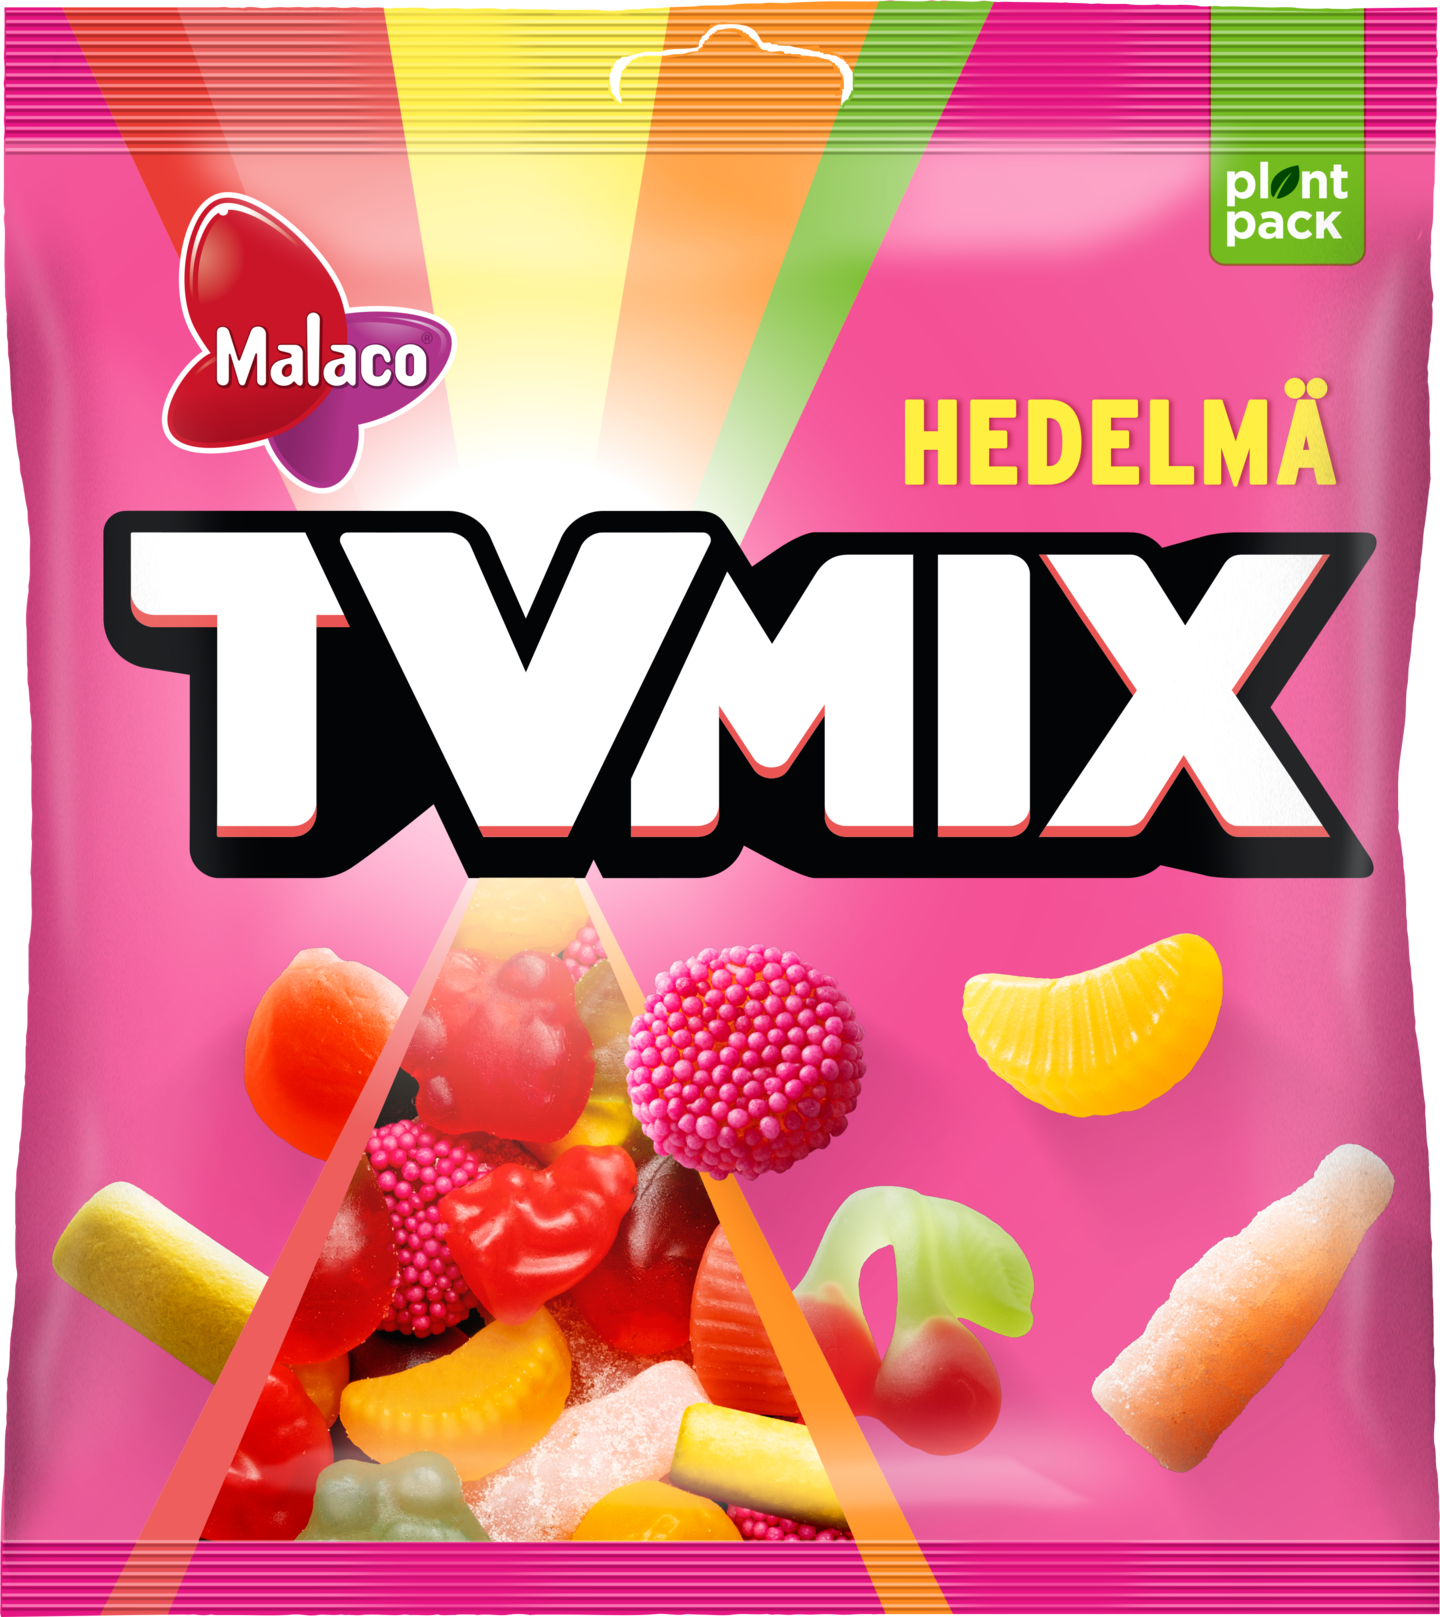 Malaco TV Mix 340g Hedelmä